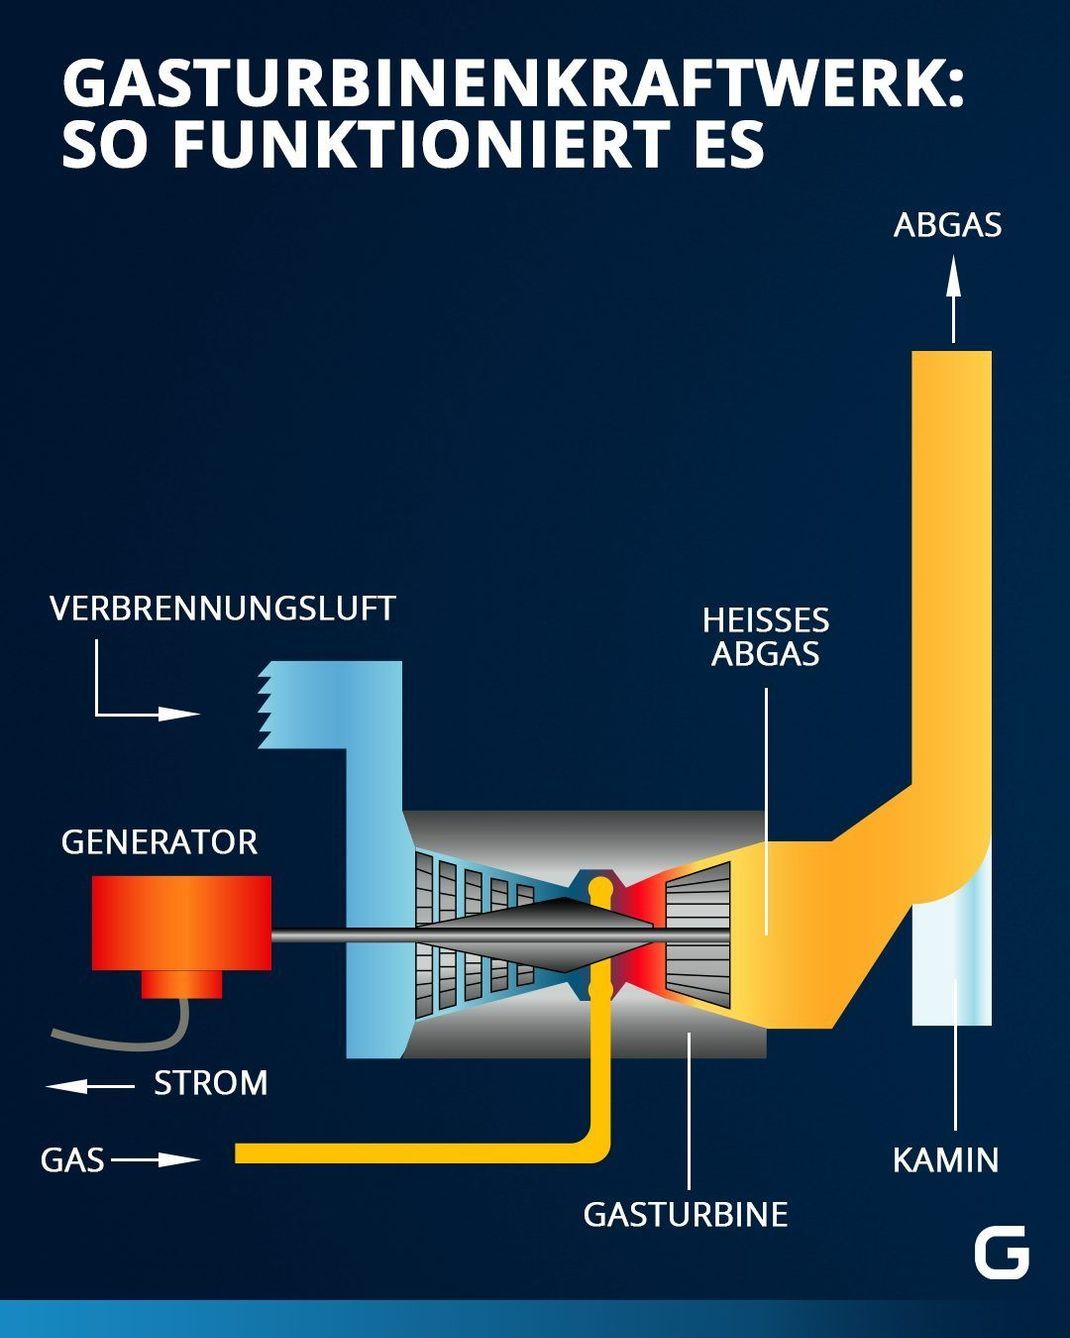 Ein Gasturbinenkraftwerk kann durch Gasverbrennung Energie gewinnen. 